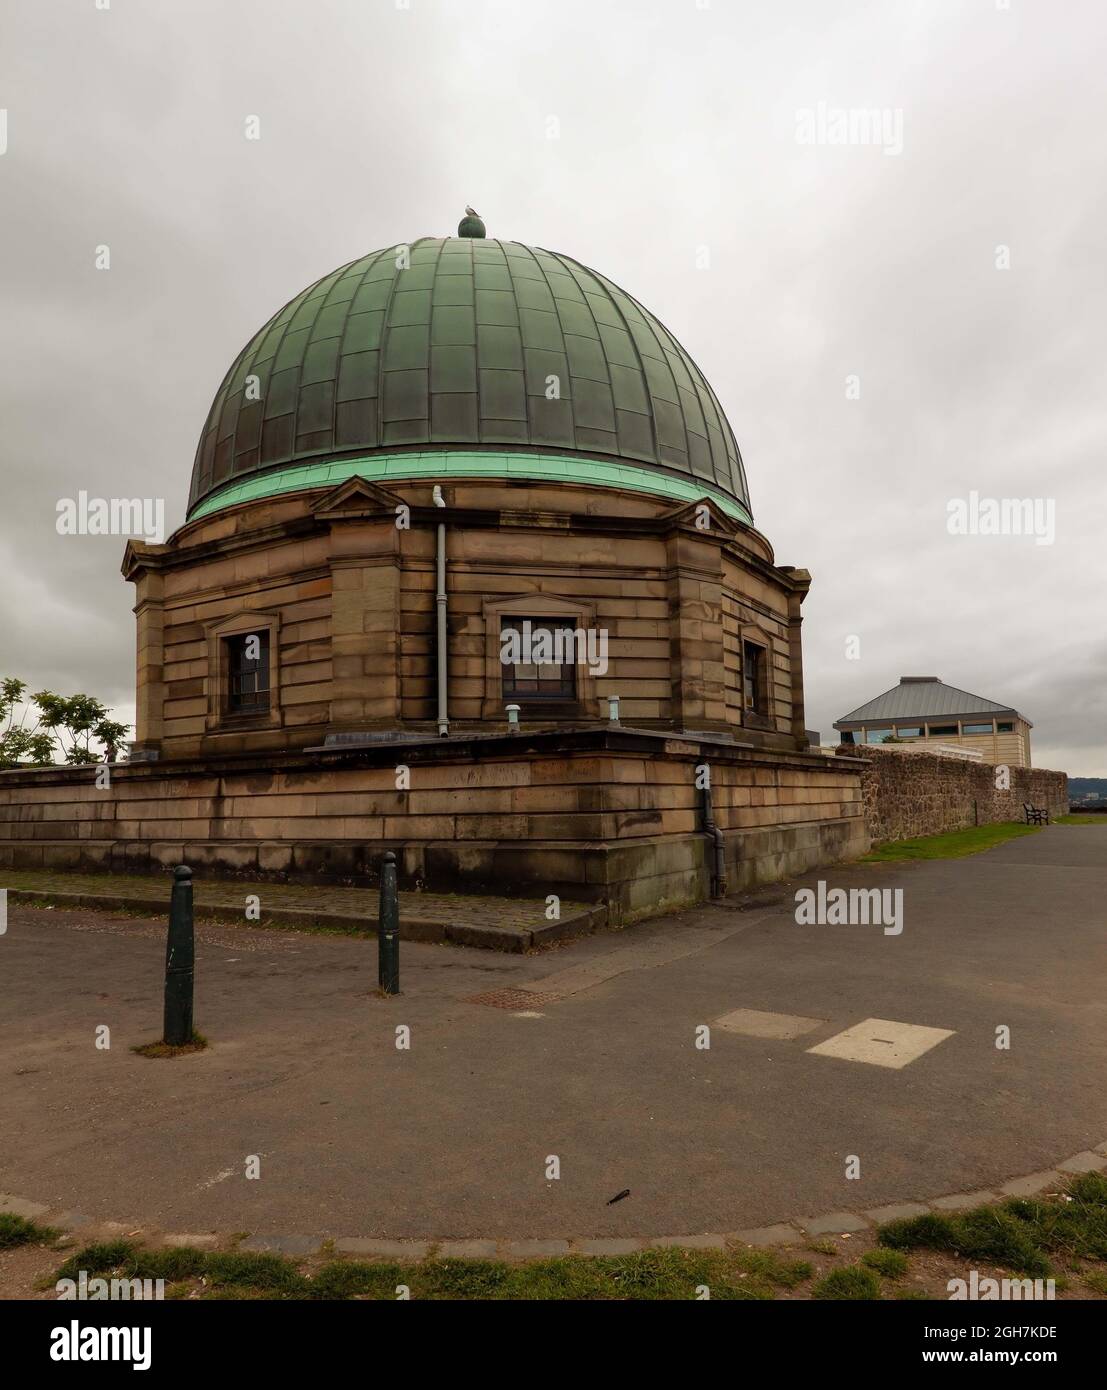 L'osservatorio della città era un osservatorio astronomico a Calton Hill a Edimburgo, Scozia. E' anche conosciuto come l'Osservatorio di Calton Hill. Foto Stock